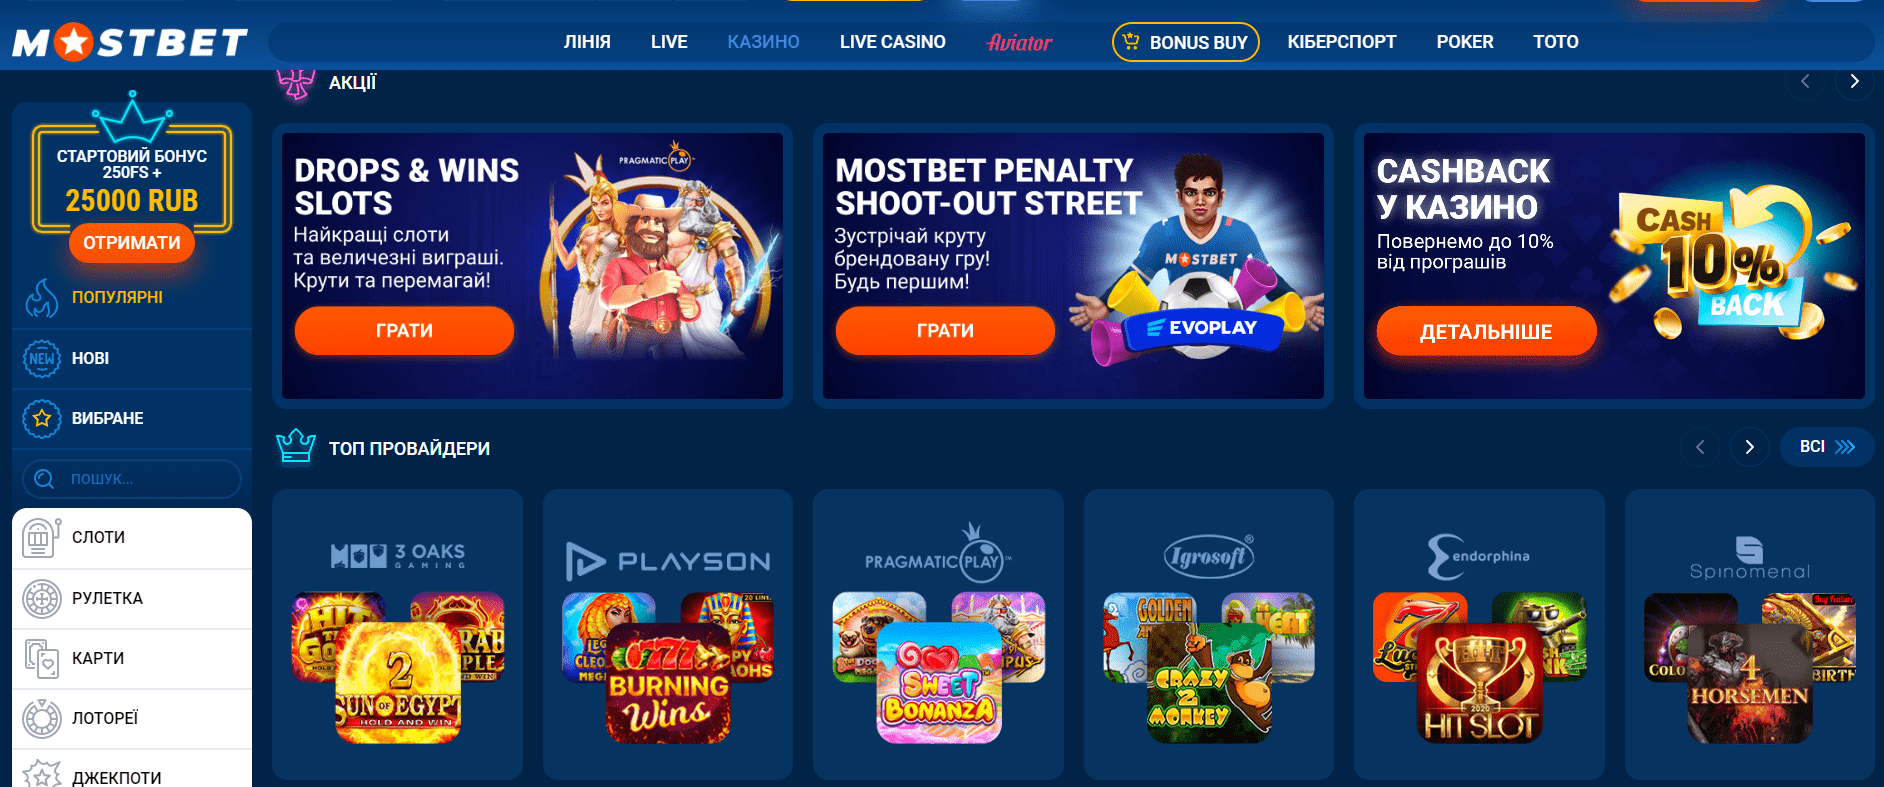 Официальный сайт casino Mostbet 